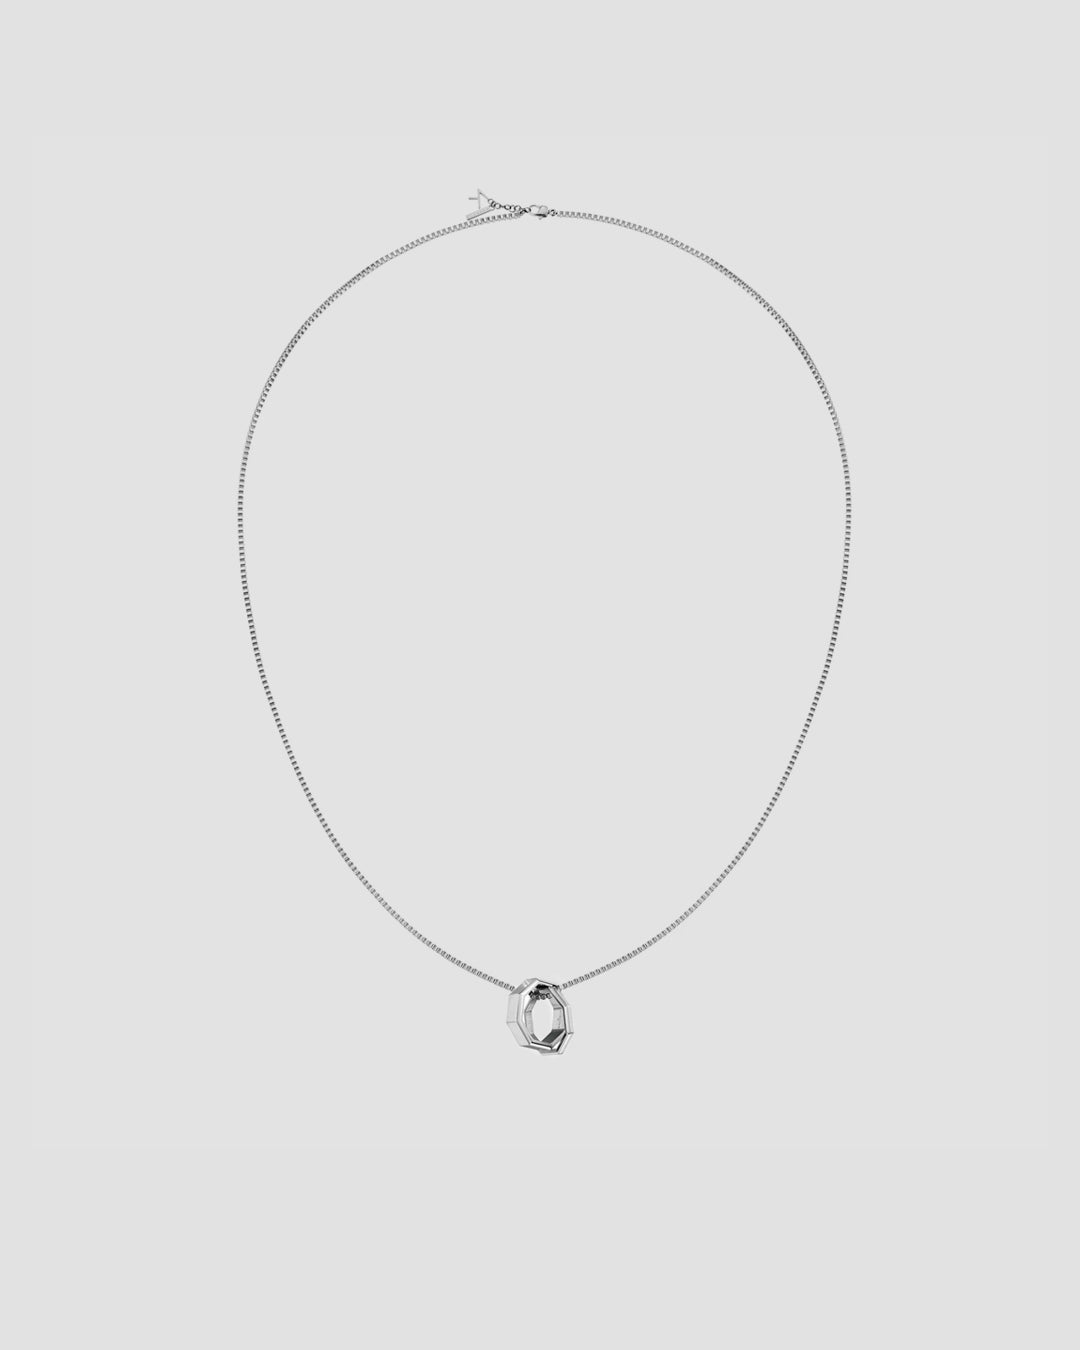 KLASSE 14 Double Okto Man Necklace - Silver